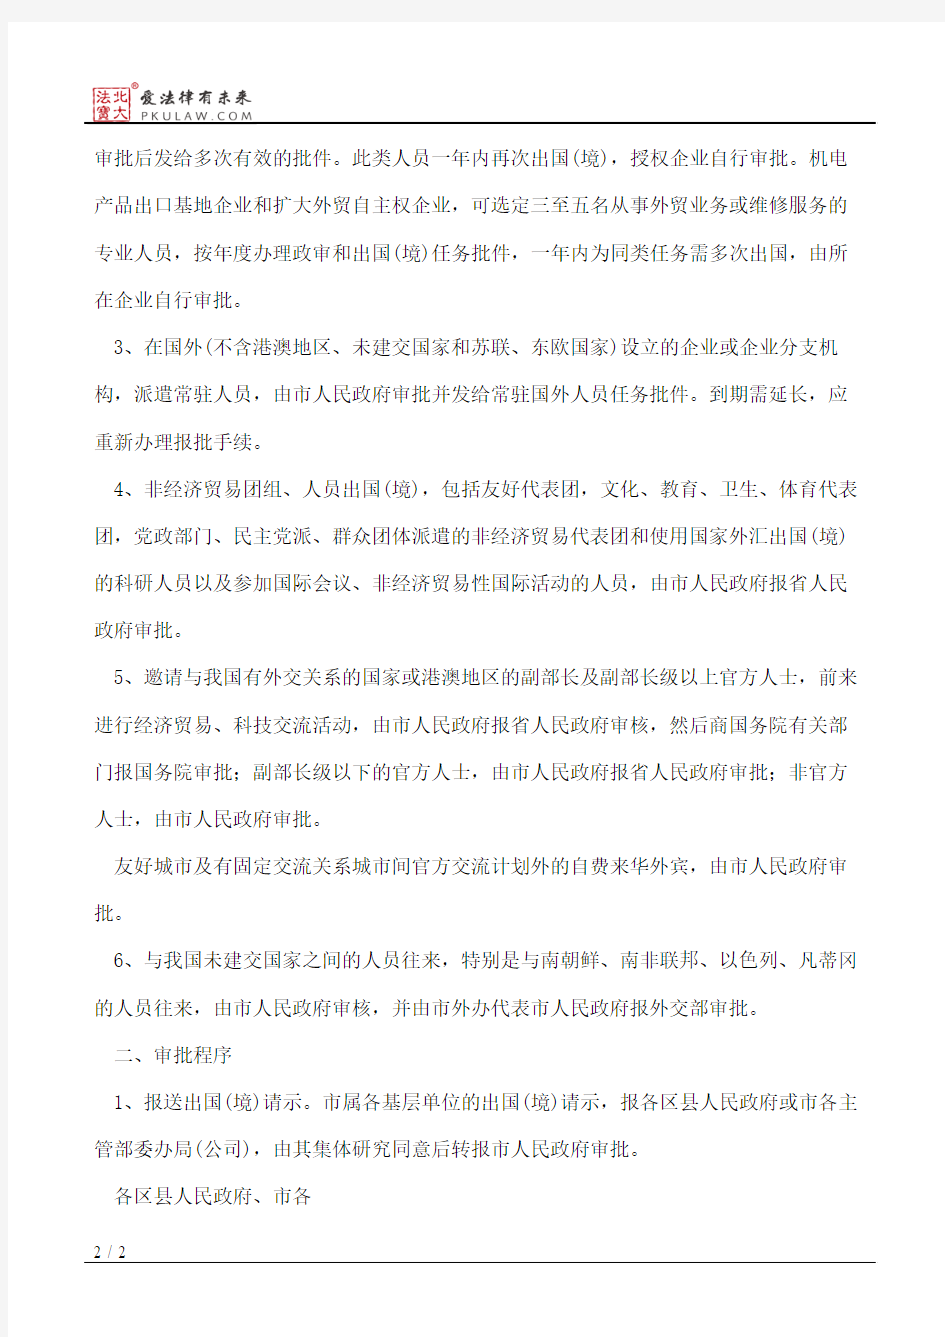 江苏省人民政府关于出入国(境)人员审批管理的暂行办法